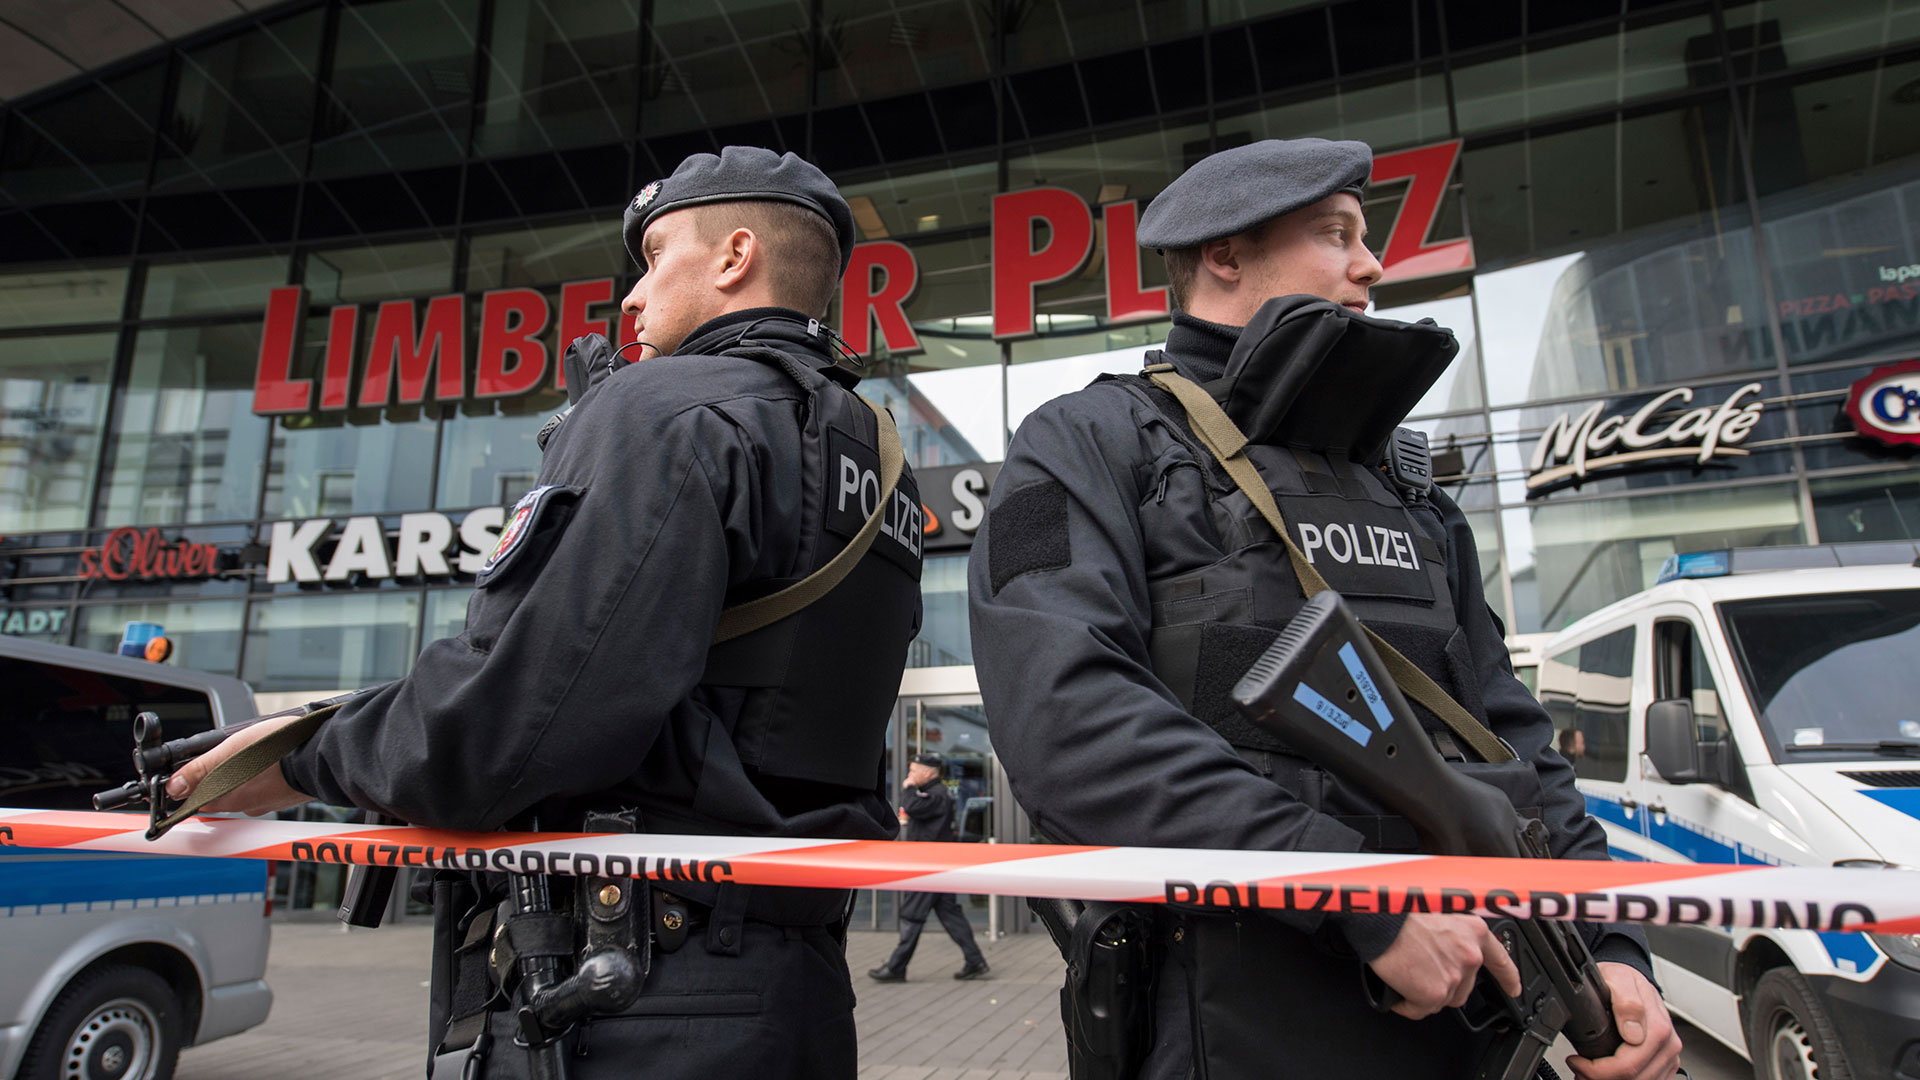 Alemania tiene fichados a 657 potenciales terroristas islamistas